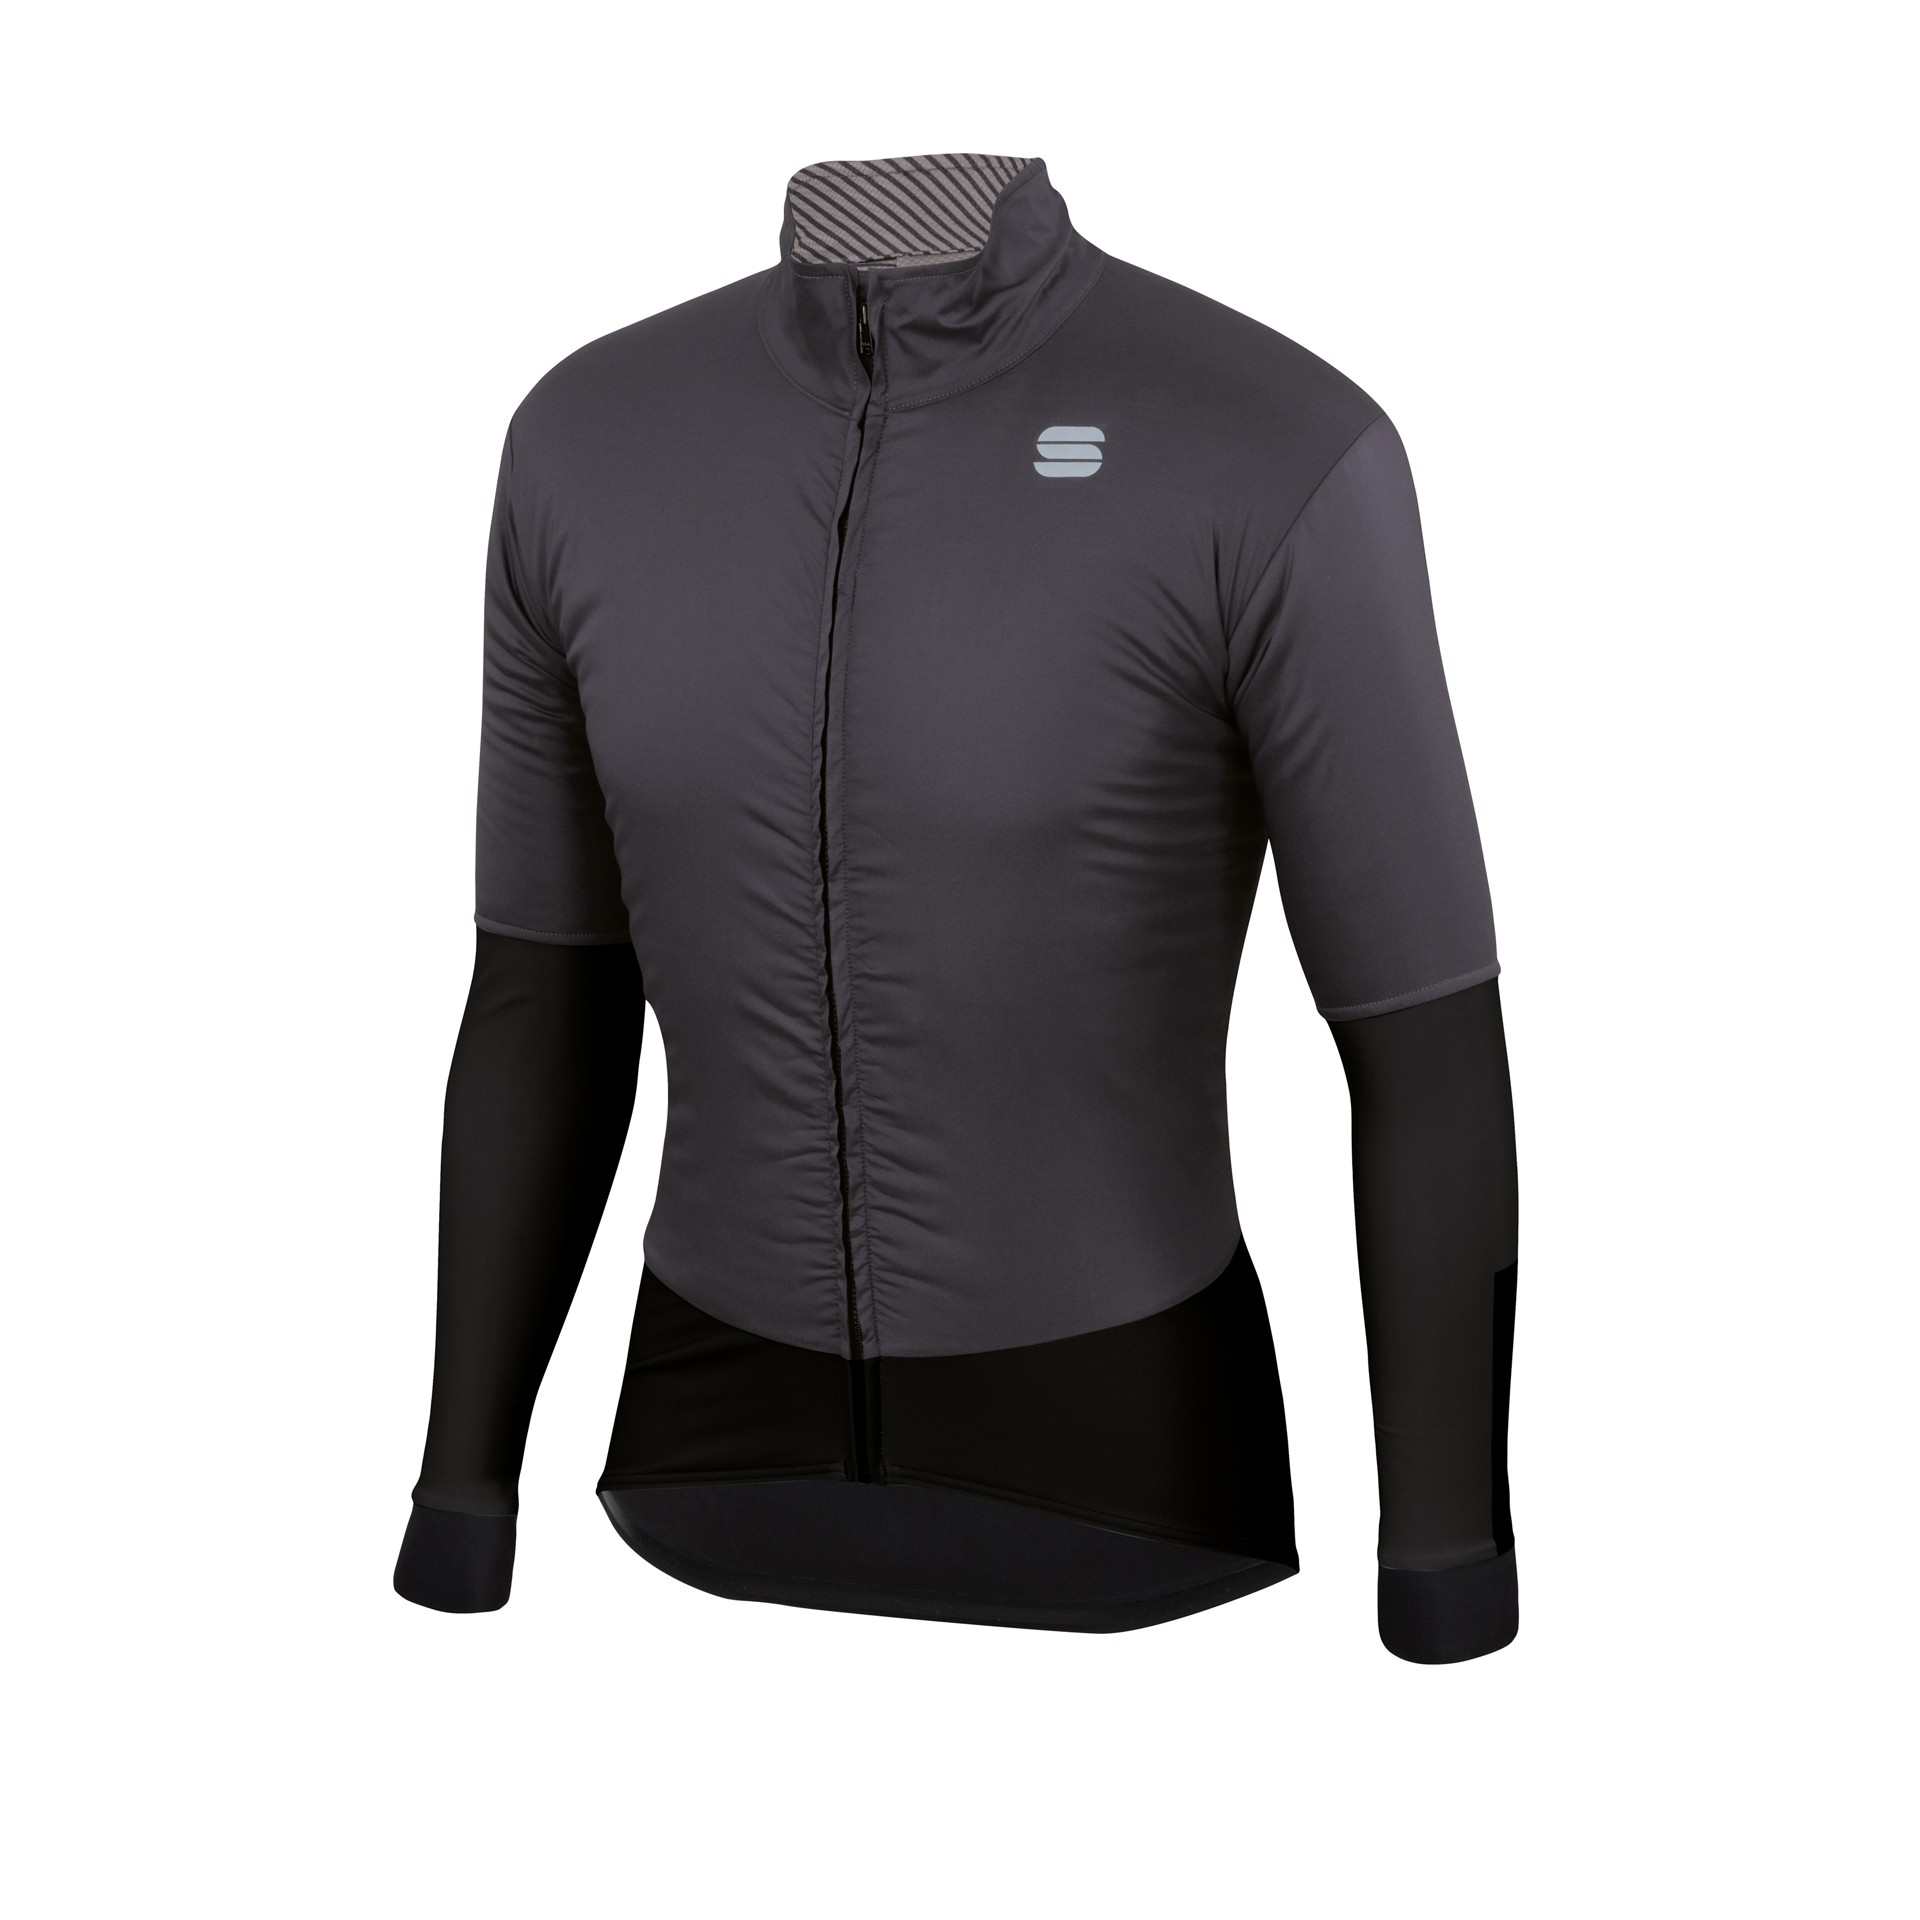 Sportful bodyfit pro medium veste de cyclisme anthracite noir